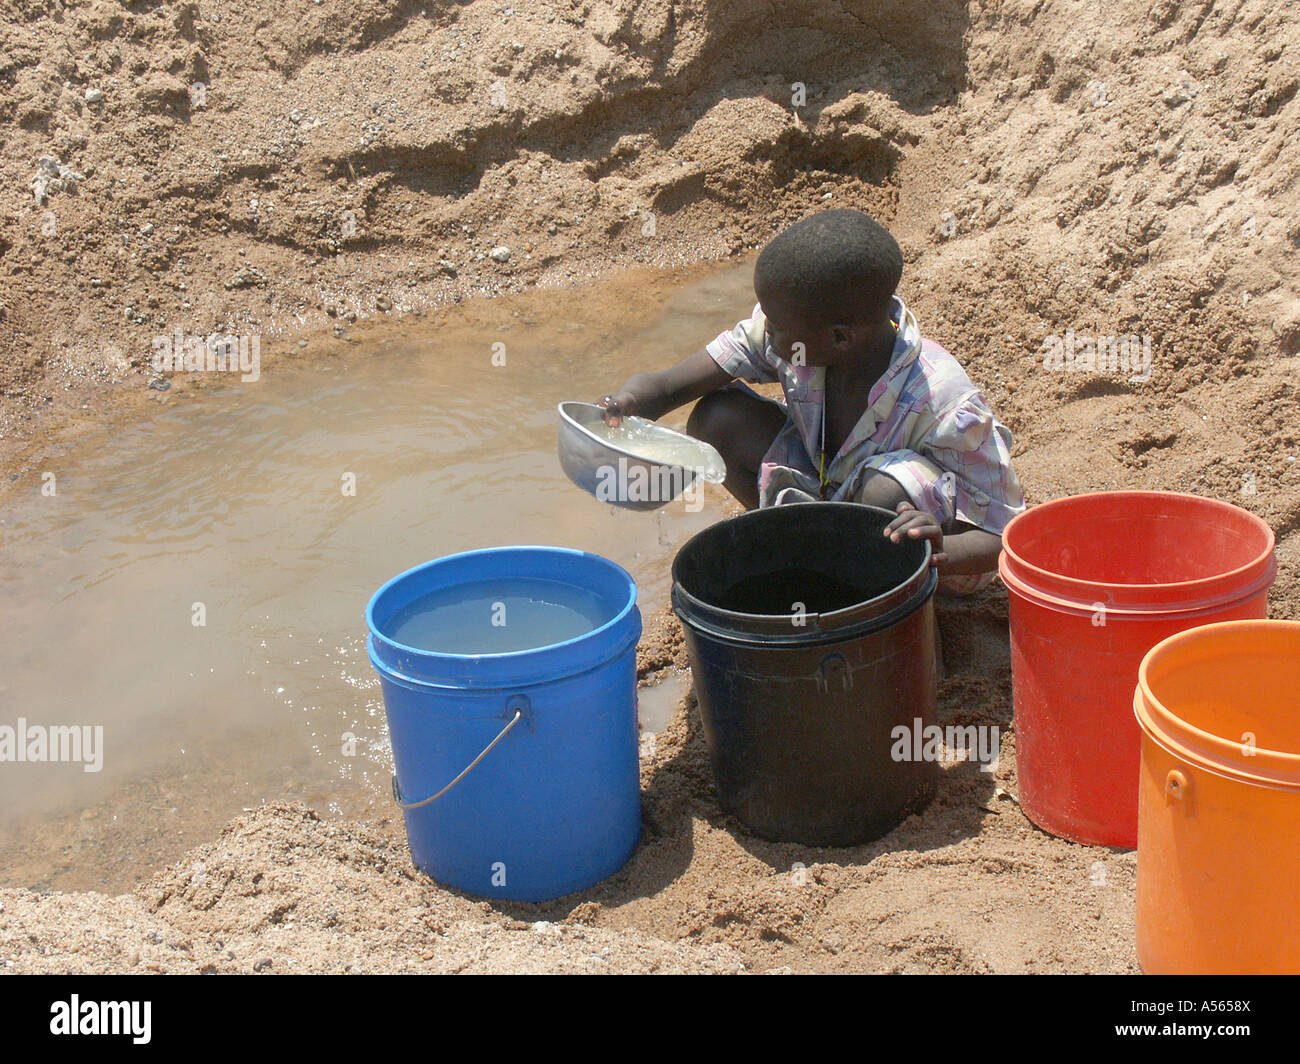 Iy7582 enfant Painet Tanzanie la collecte de l'eau sale et lit d'une rivière asséchée au pays en développement, de pays moins shinyanga Banque D'Images